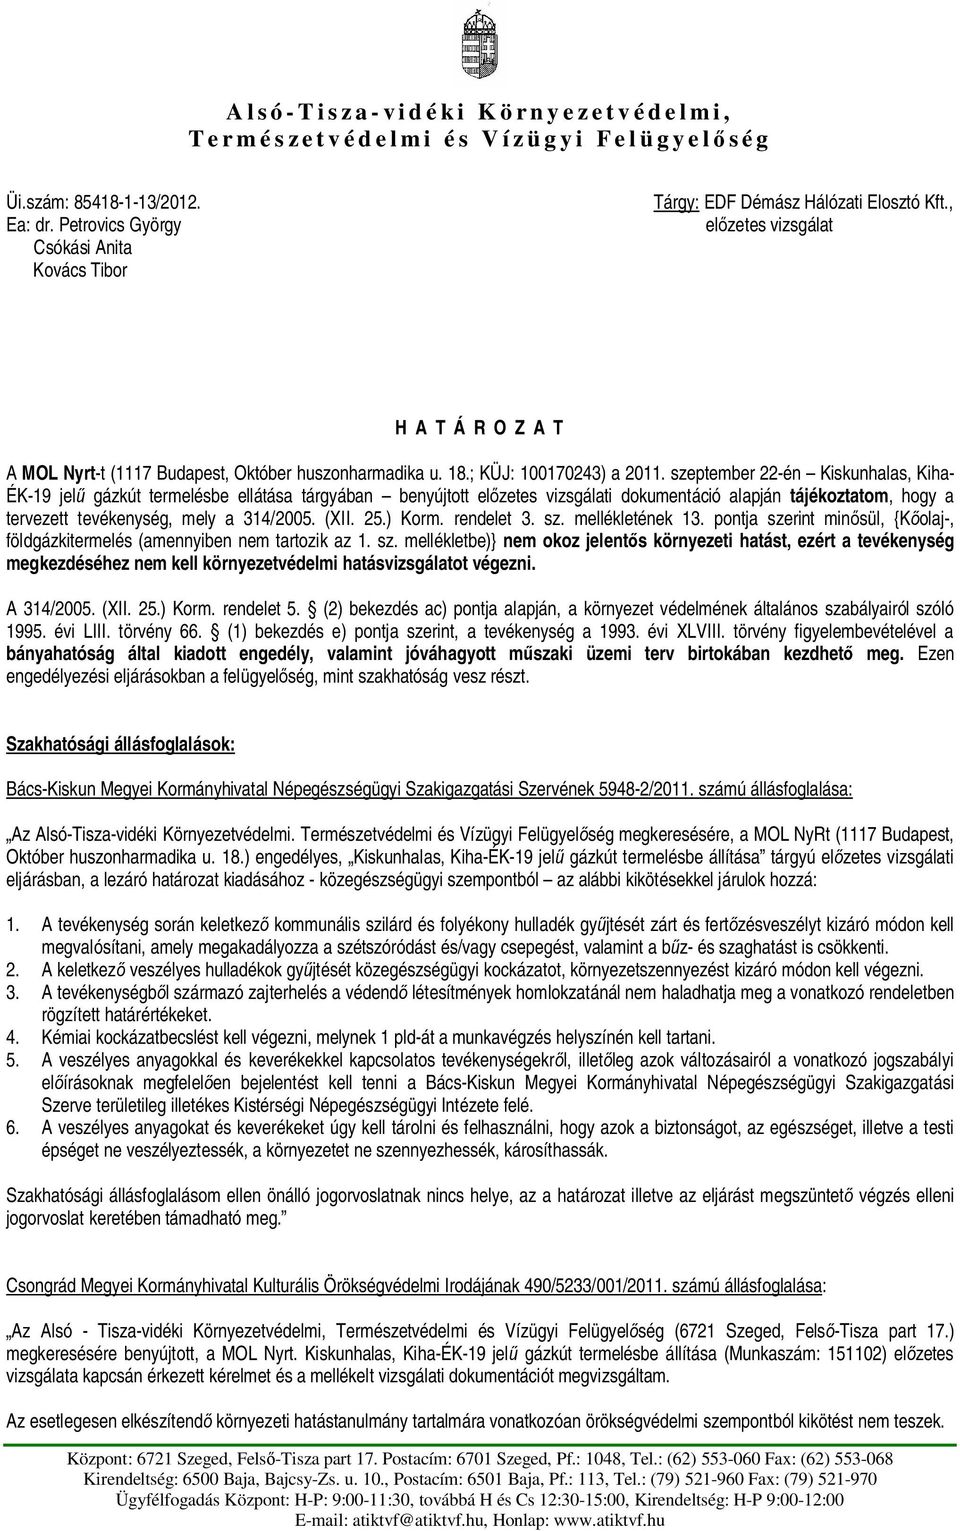 szeptember 22-én Kiskunhalas, Kiha- ÉK-19 jel gázkút termelésbe ellátása tárgyában benyújtott el zetes vizsgálati dokumentáció alapján tájékoztatom, hogy a tervezett tevékenység, mely a 314/2005.